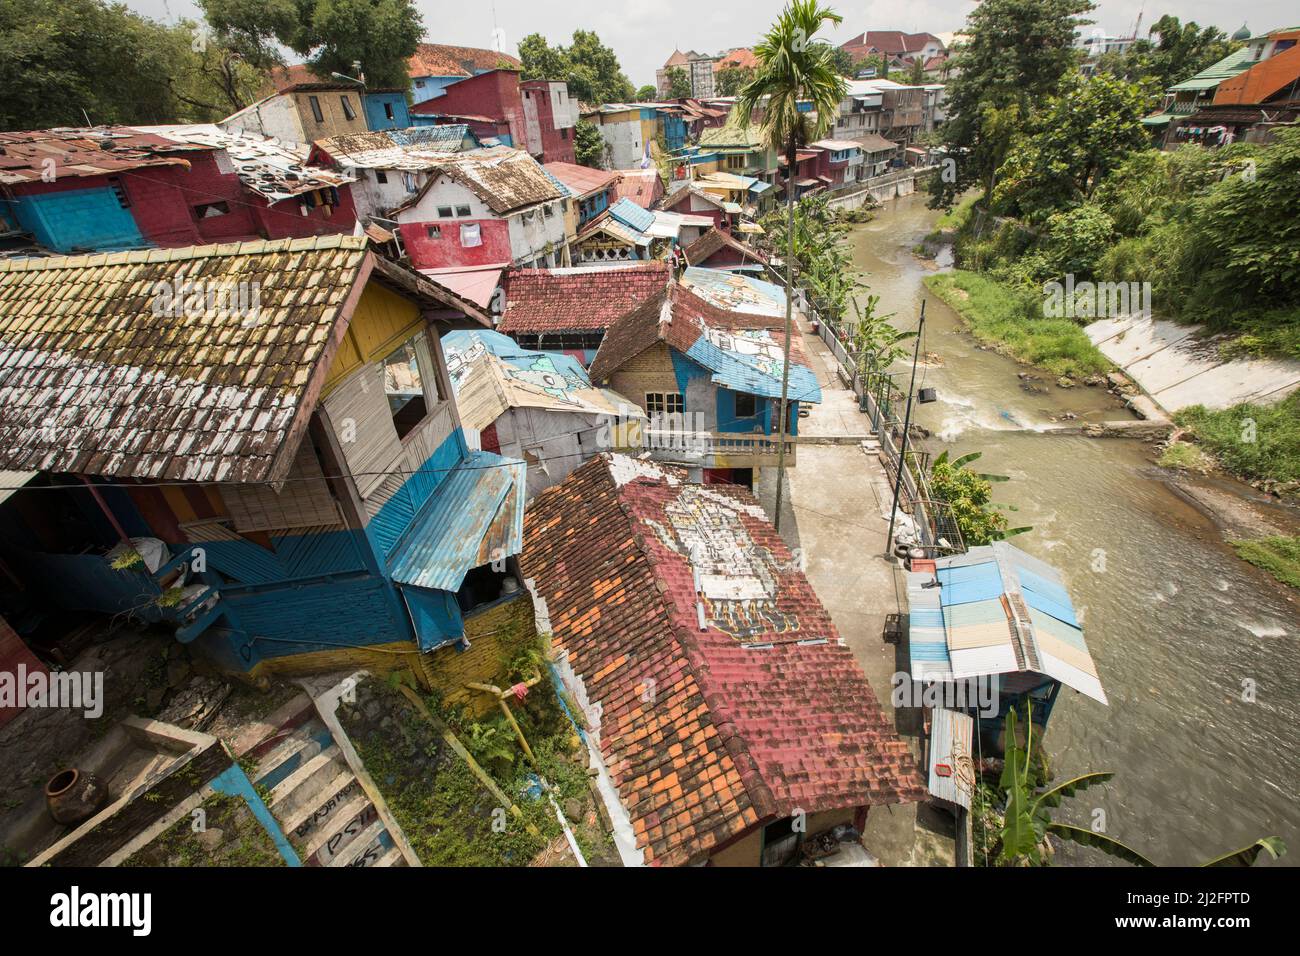 Des bidonvilles colorés surpeuplés à Yogyakarta (Jogjakarta), la deuxième plus grande ville d'Indonésie. Banque D'Images